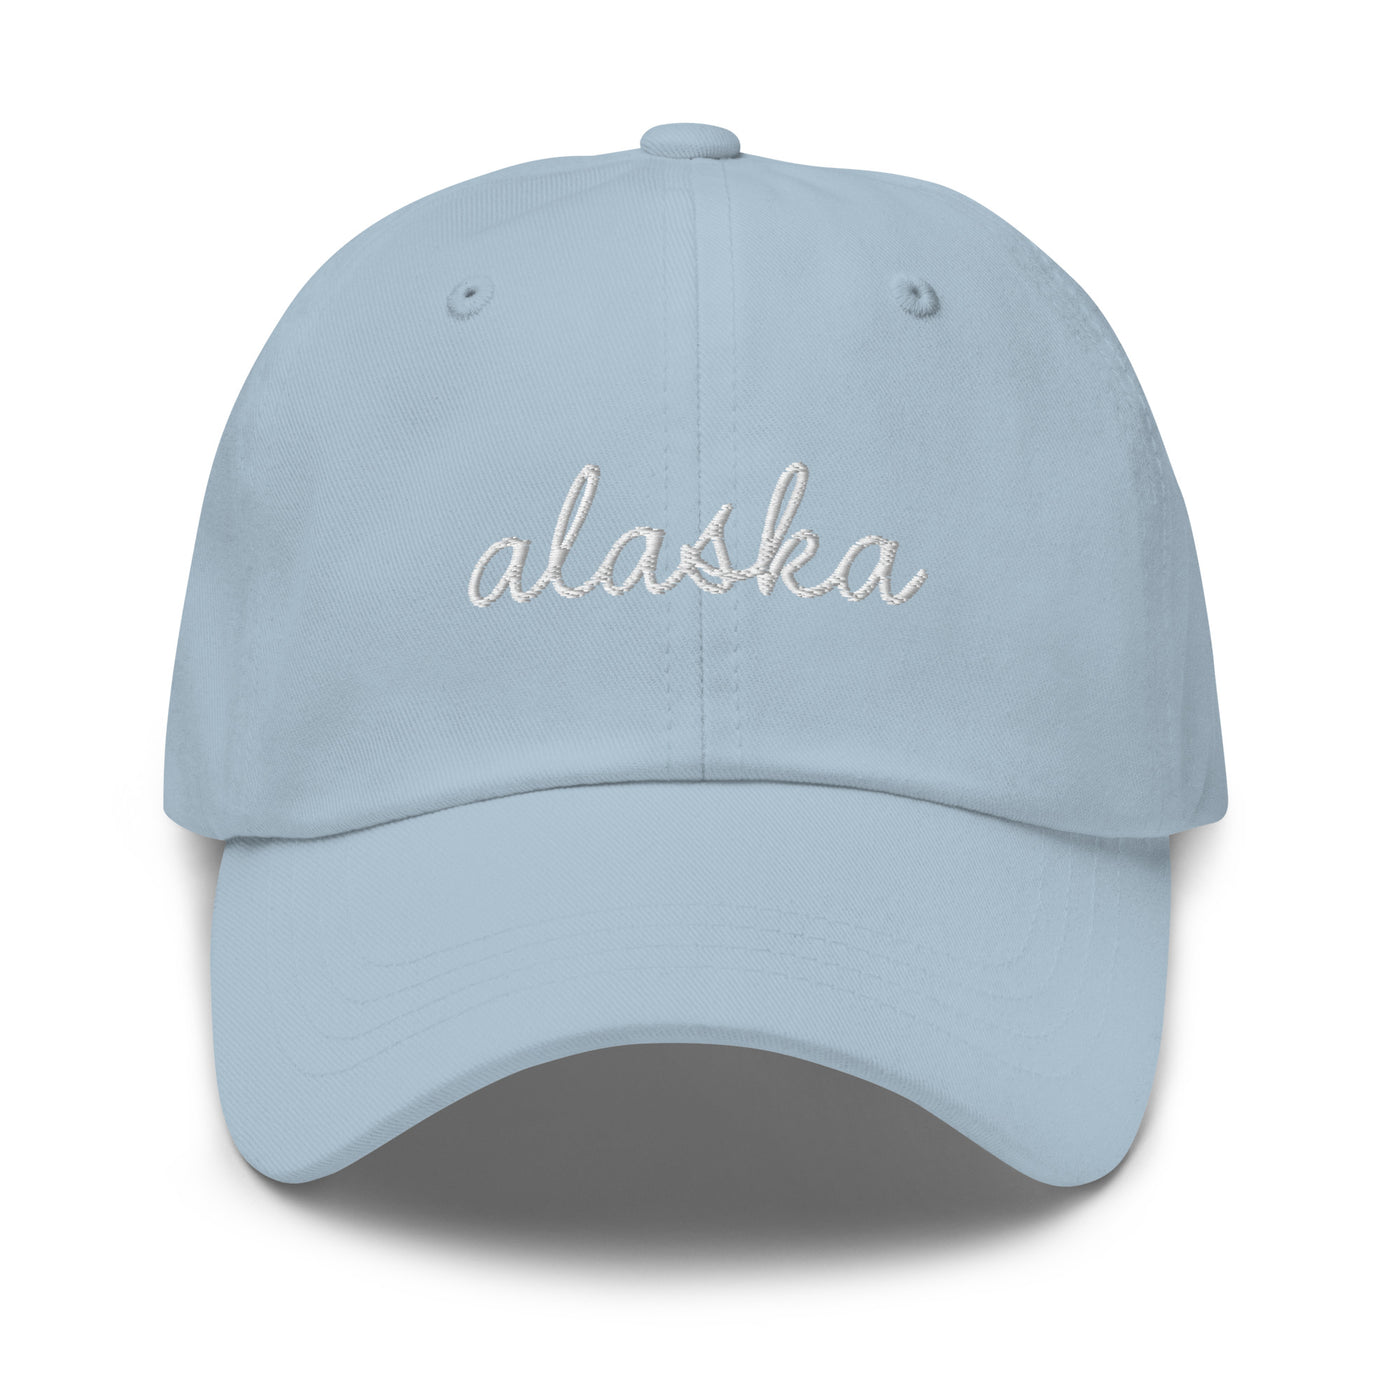 Alaska Script Embroidered Hat